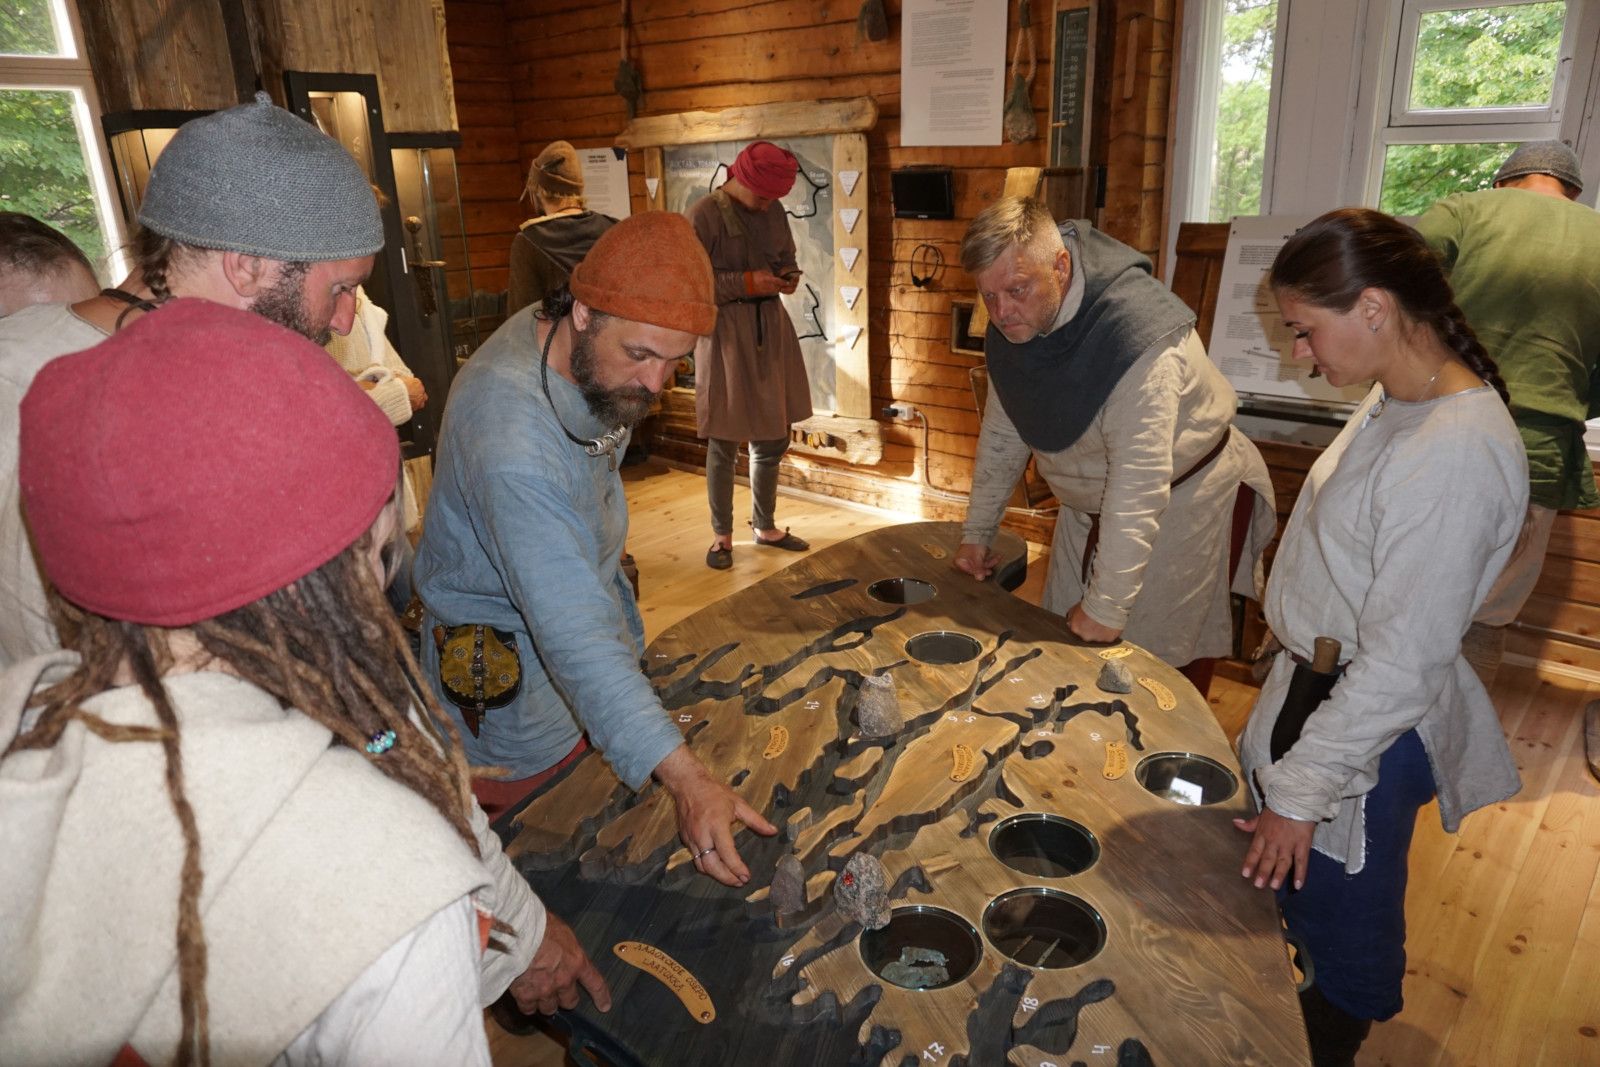 Näyttelyssä on jo käynyt monia pietarilaisia turisteja, muun muassa viikinkien historian harrastajia. Heillä on ollut mahdollisuus nähdä Kurkijoen nykyajan arkeologisia löytöjä ja pitää käsissään vanhoista löydöistä otettuja kopioita. 0+ Kuva: InterAktiiv